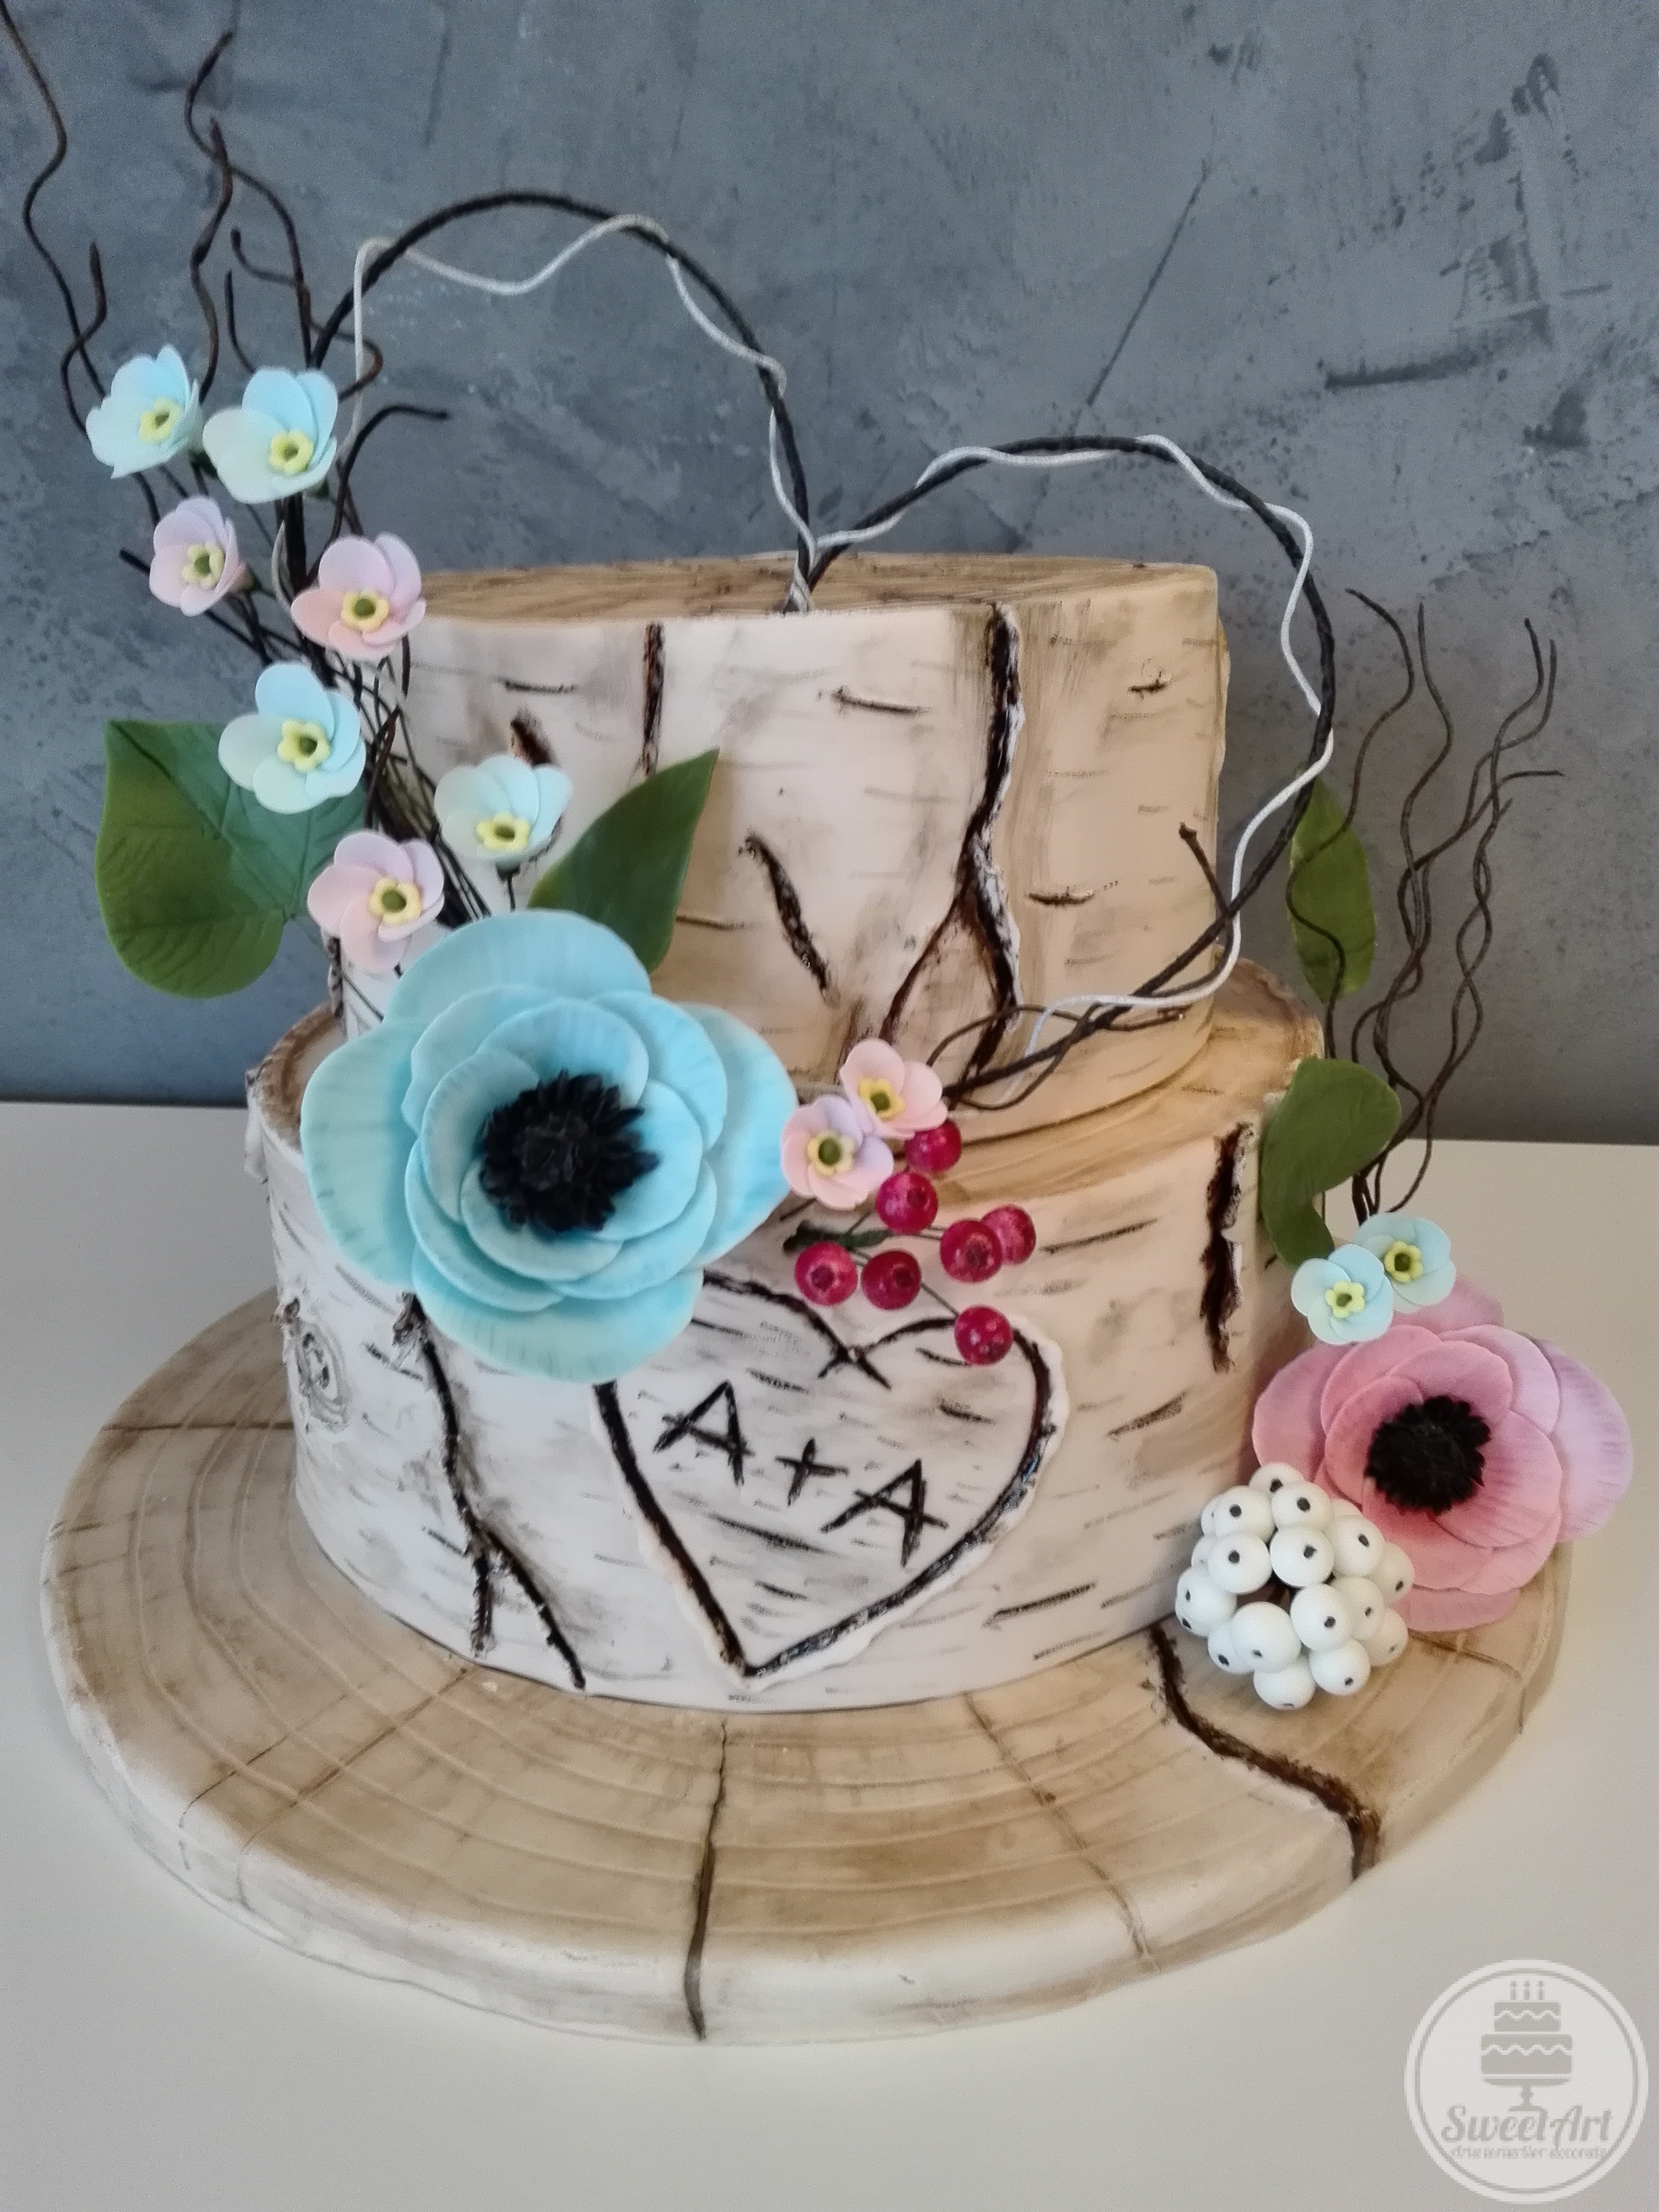 Tort romantic buștean de mesteacăn și aranjament inimă din crenguțe cu flori: anemone coronaria bleu și roz, myosotis sau flori-de-nu-mă-uita bleu și roz, bobițe de vâsc și bobițe de zăpadă - Symphoricarpus albus și frunze